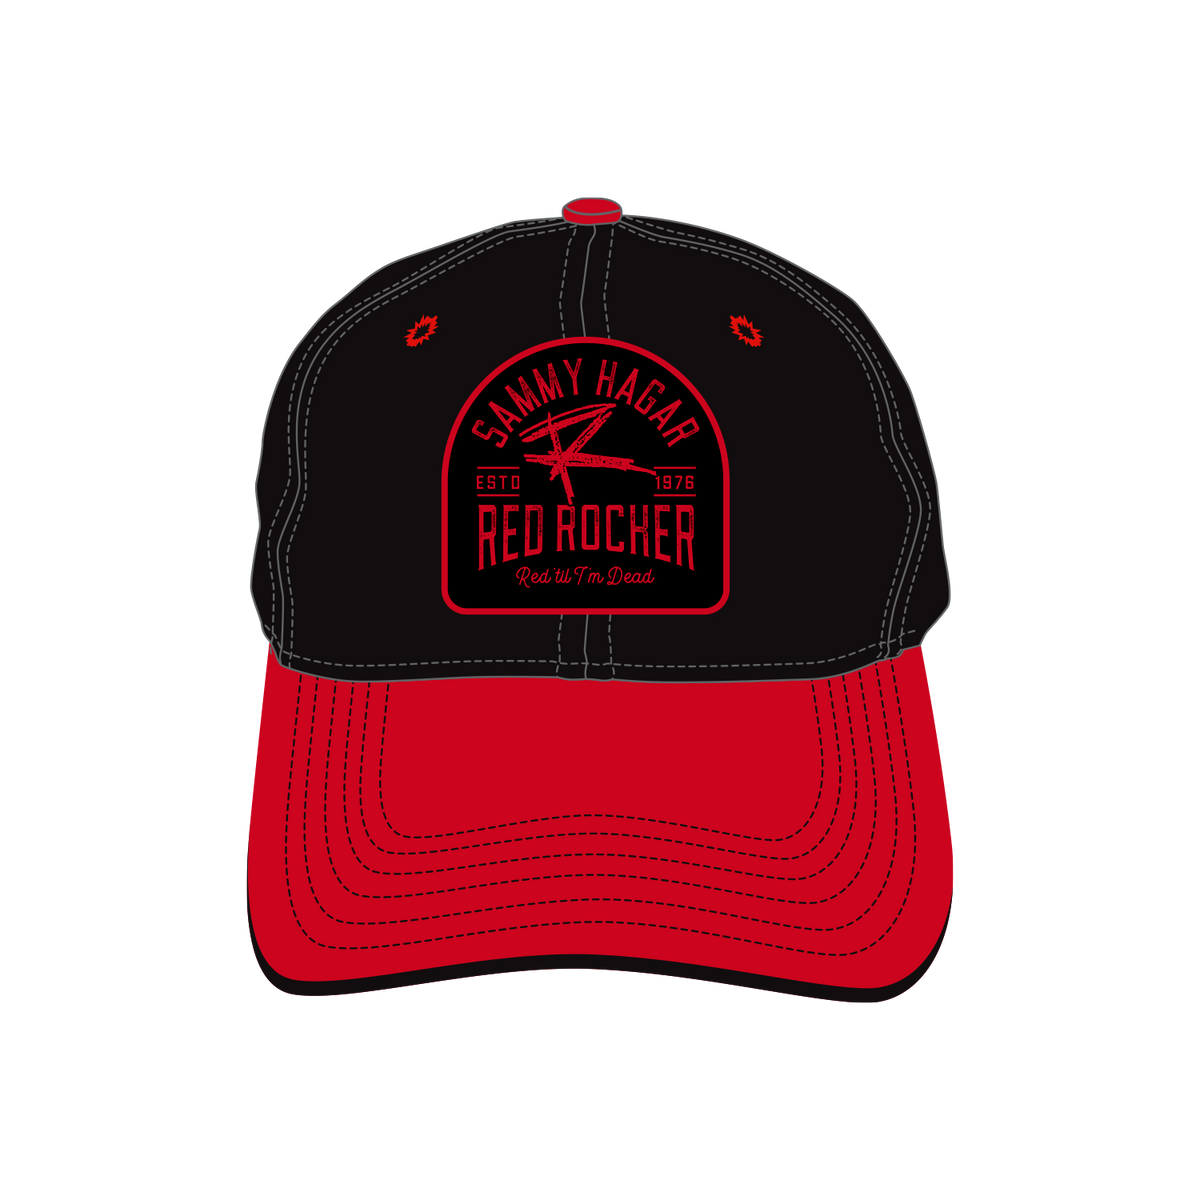 Sammy Hagar Red Rocker Trucker Hat